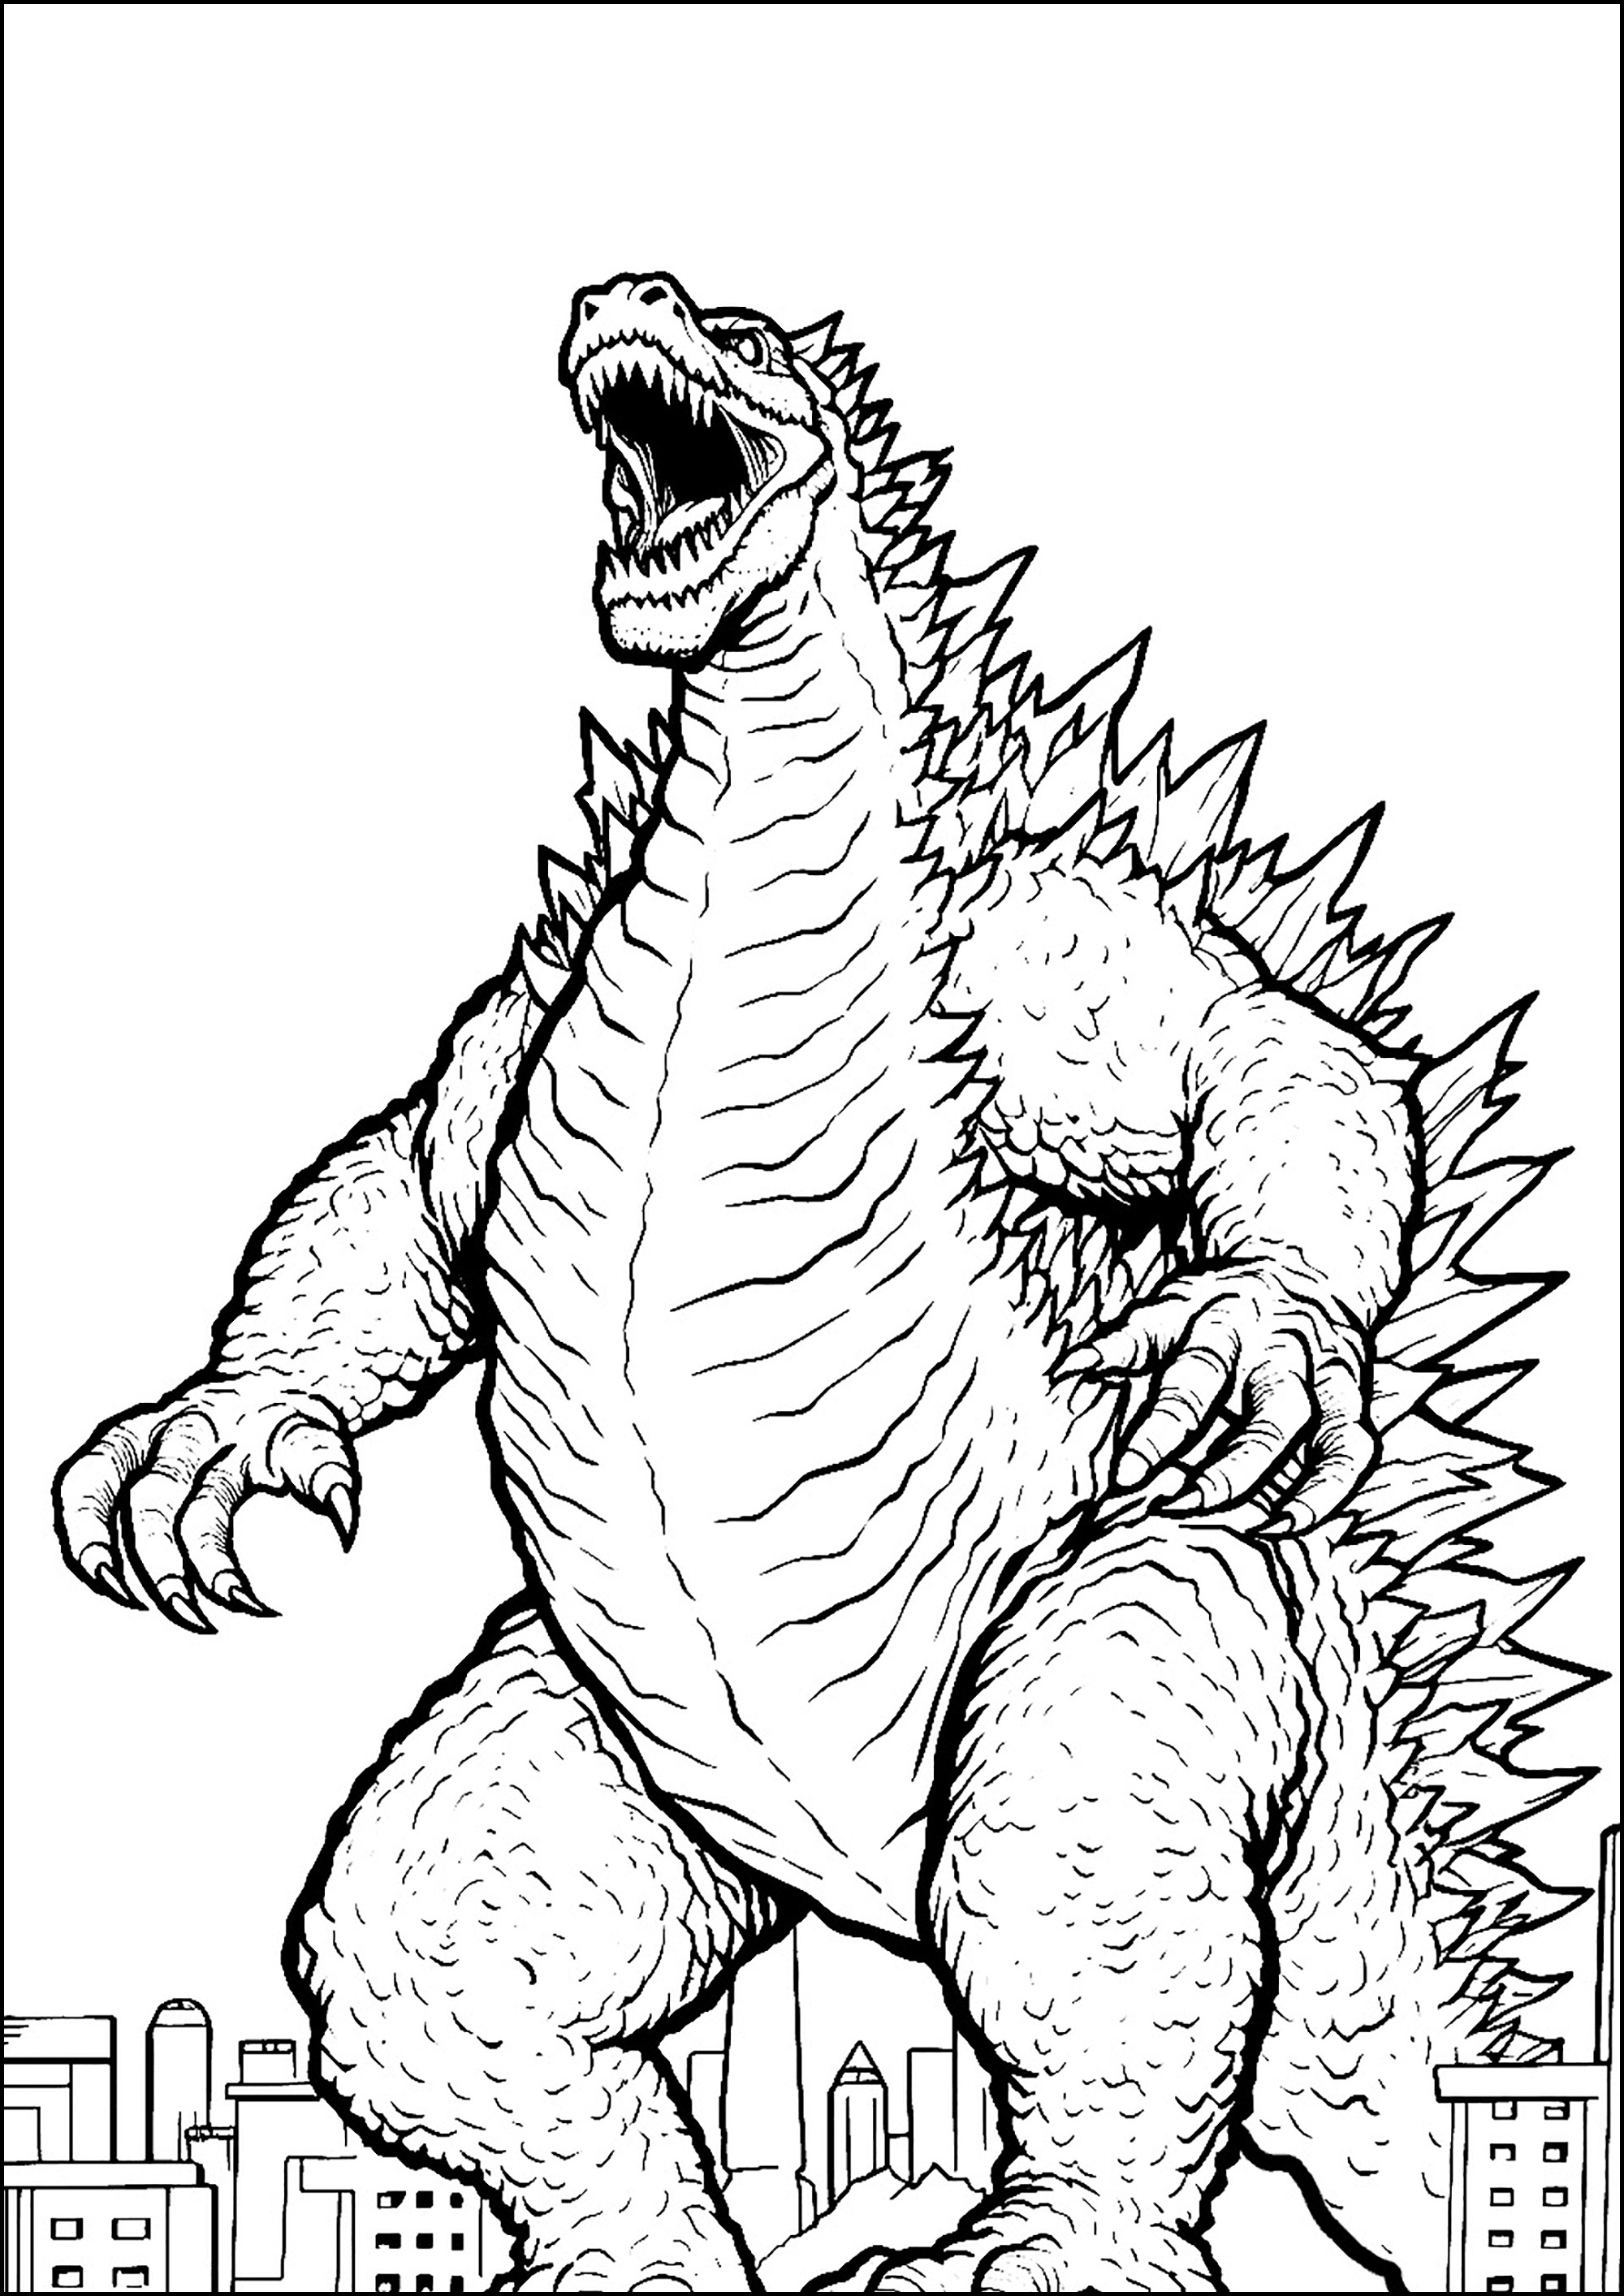 O enorme Godzilla, muito zangado. Godzilla é 'um cruzamento entre um gorila e uma baleia', em referência ao seu tamanho, força e origens aquáticas.